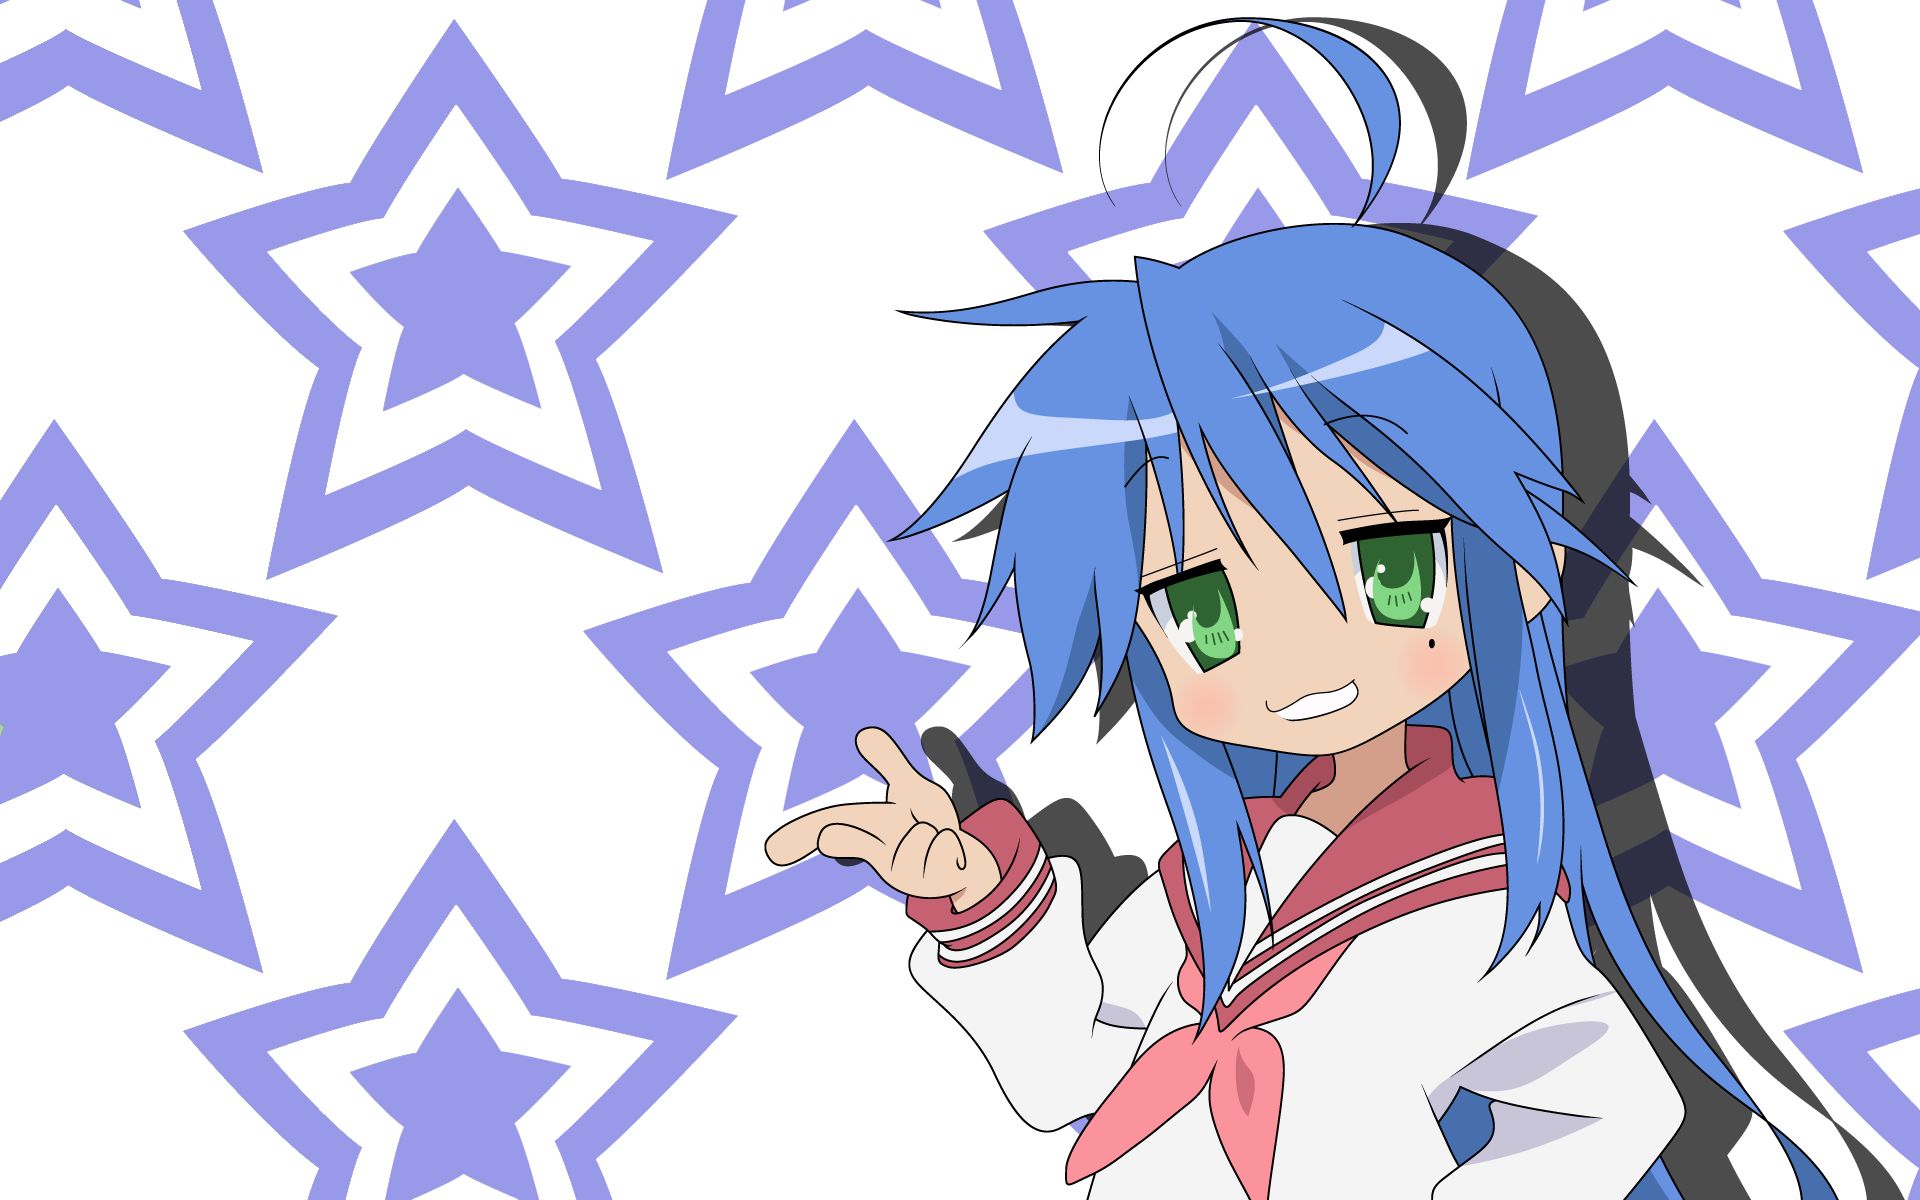 Descarga gratuita de fondo de pantalla para móvil de Animado, Raki Suta: Lucky Star, Konata Izumi.